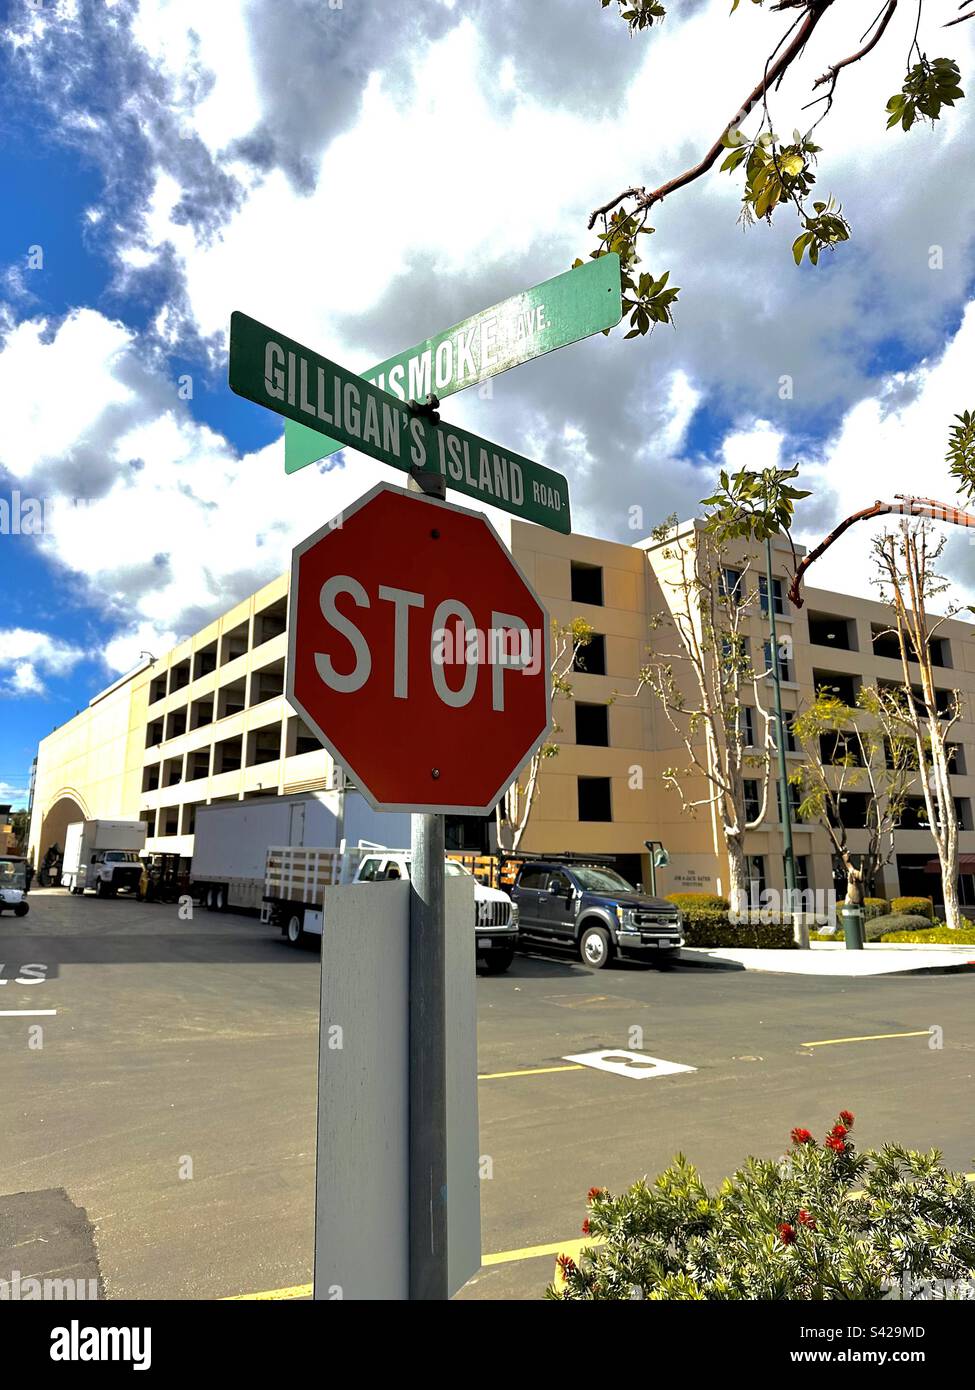 L'intersezione di Gilligan's Island Road e Gunsmoke Avenue presso il CBS Studio Center (noto anche come Radford Studio Center, e CBS Radford) nel quartiere di Studio City di Los Angeles, California. Foto Stock